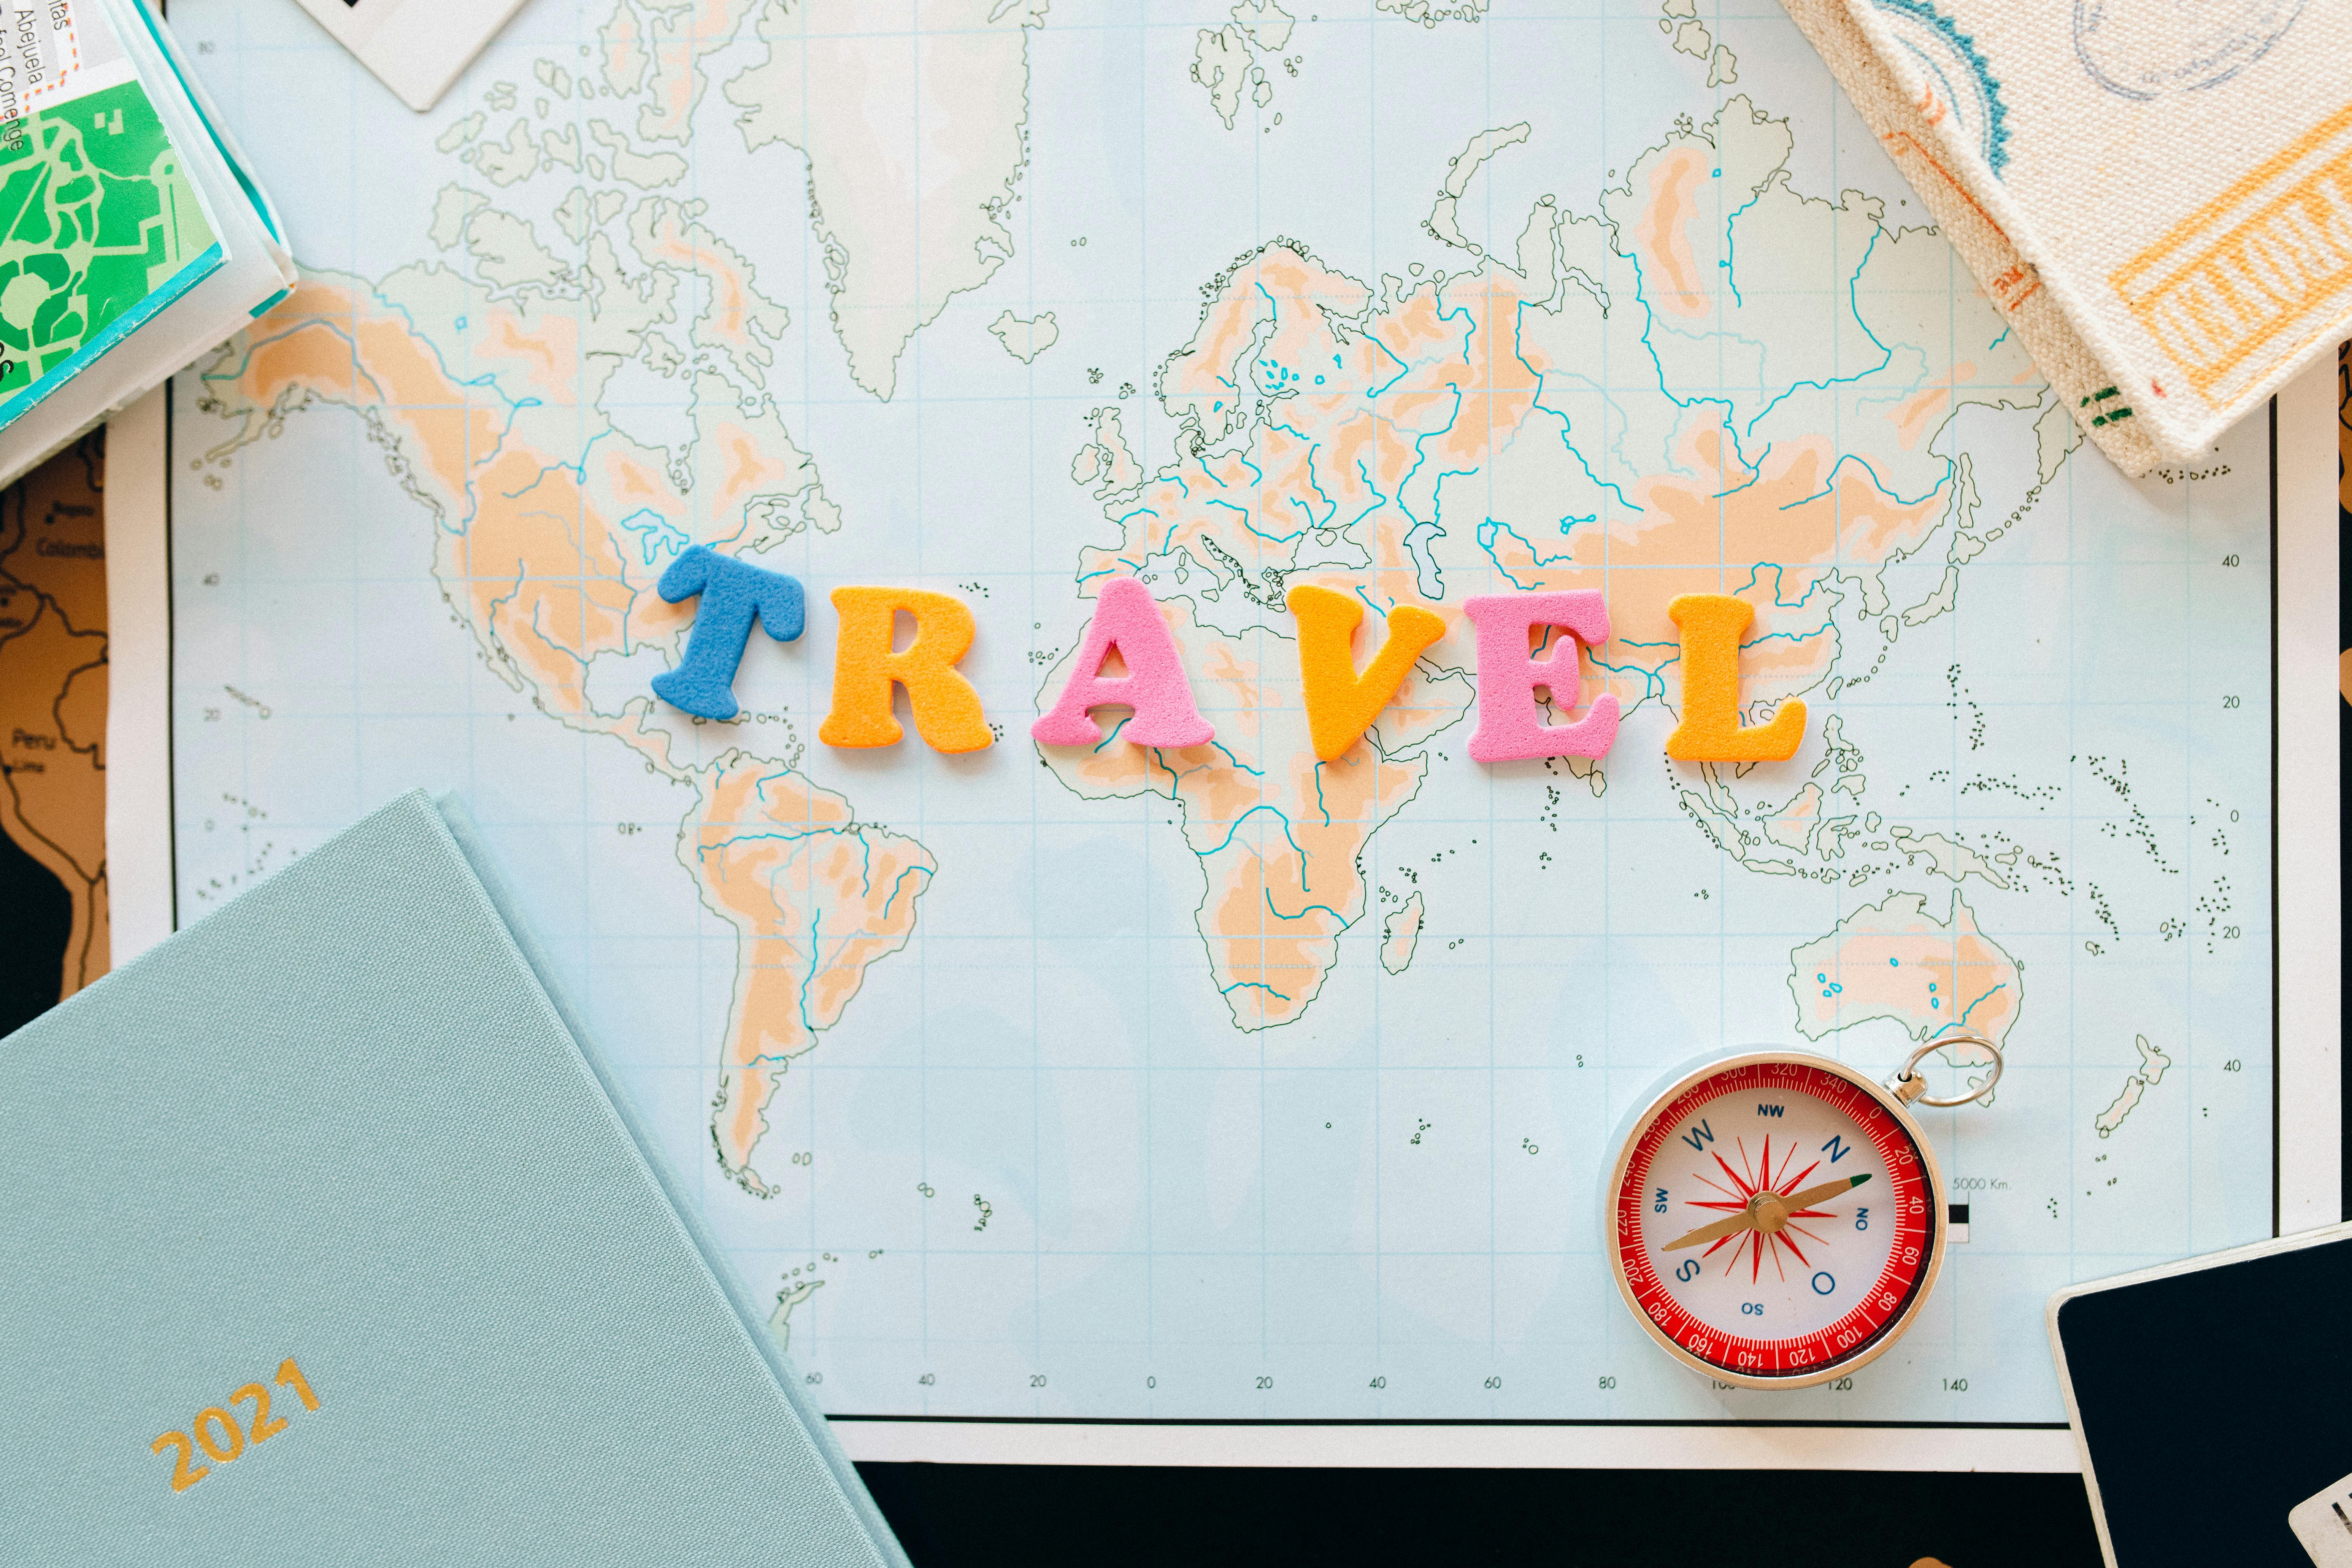 Des plans de voyage | Source : Pexels